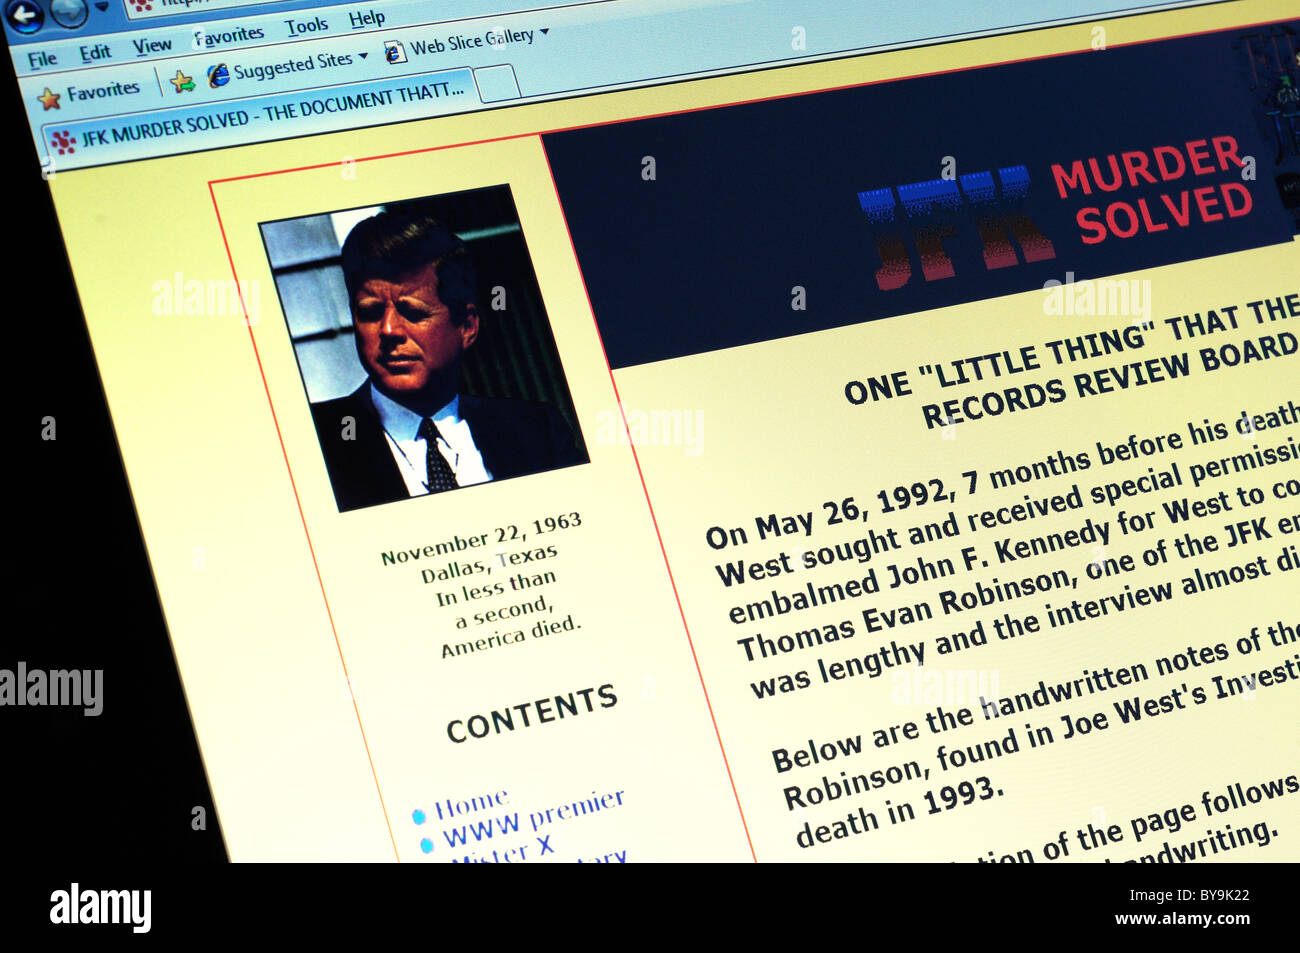 A JFK murder solved website Stock Photo